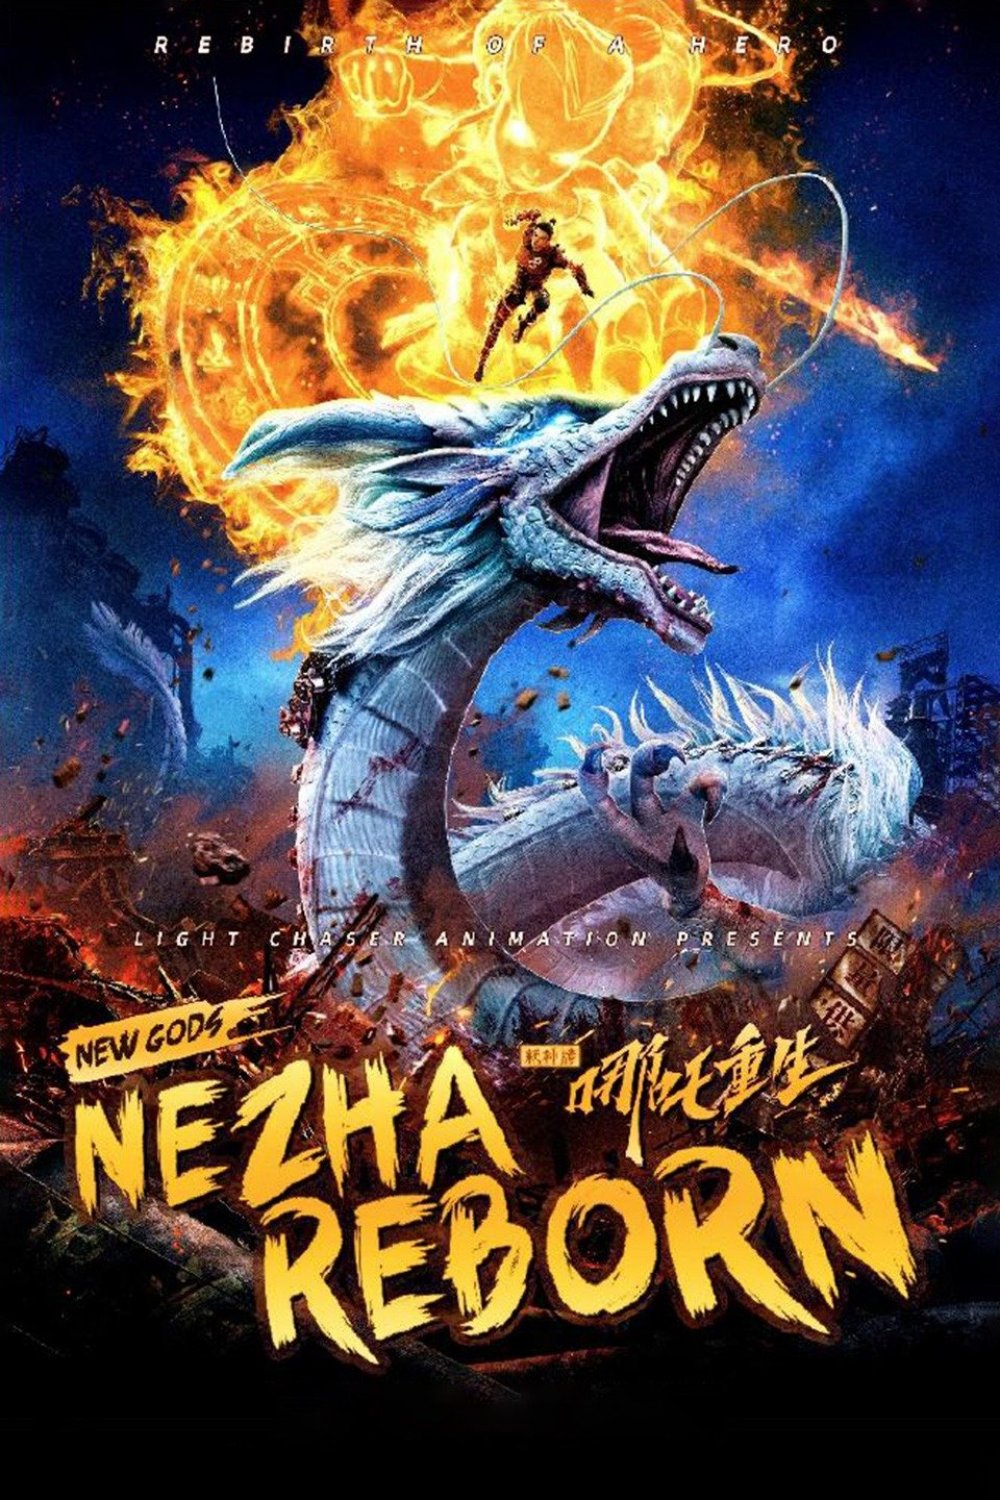 NEW GODS: NEZHA REBORN/Photo Credit: Rotten Tomatoes